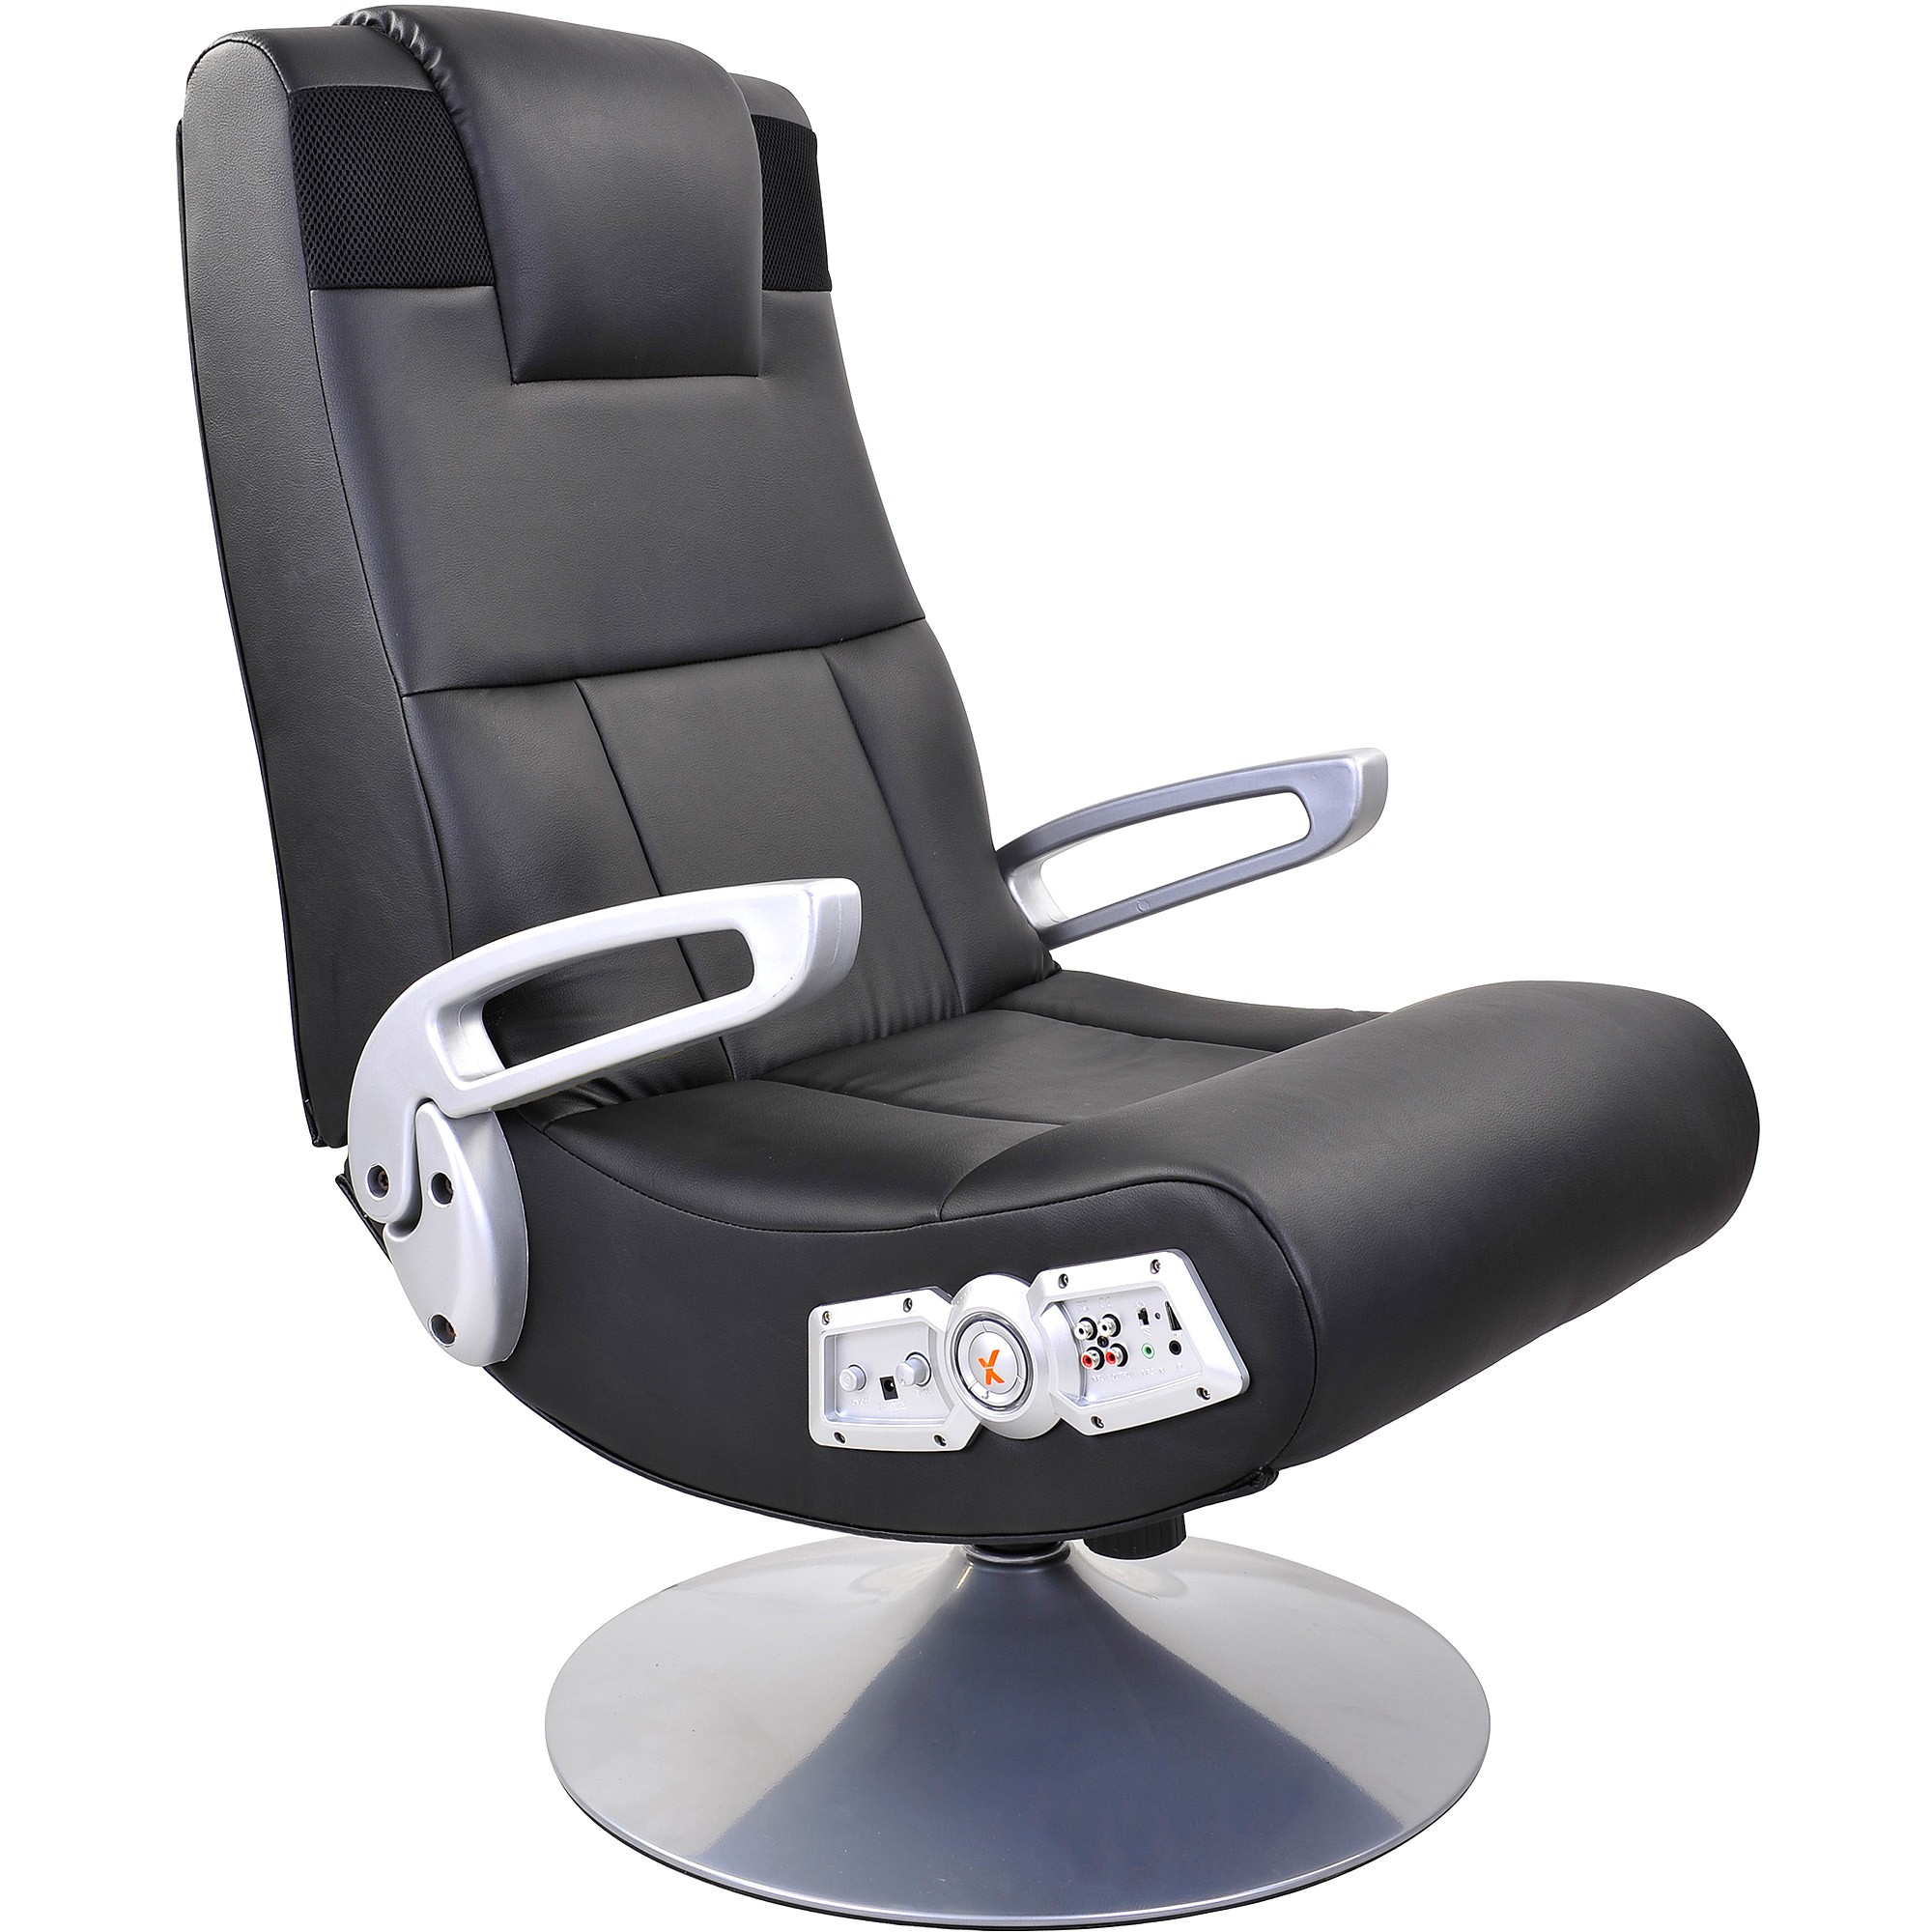 x rocker pedestal video rocker gaming chair with bluetooth technology walmart com